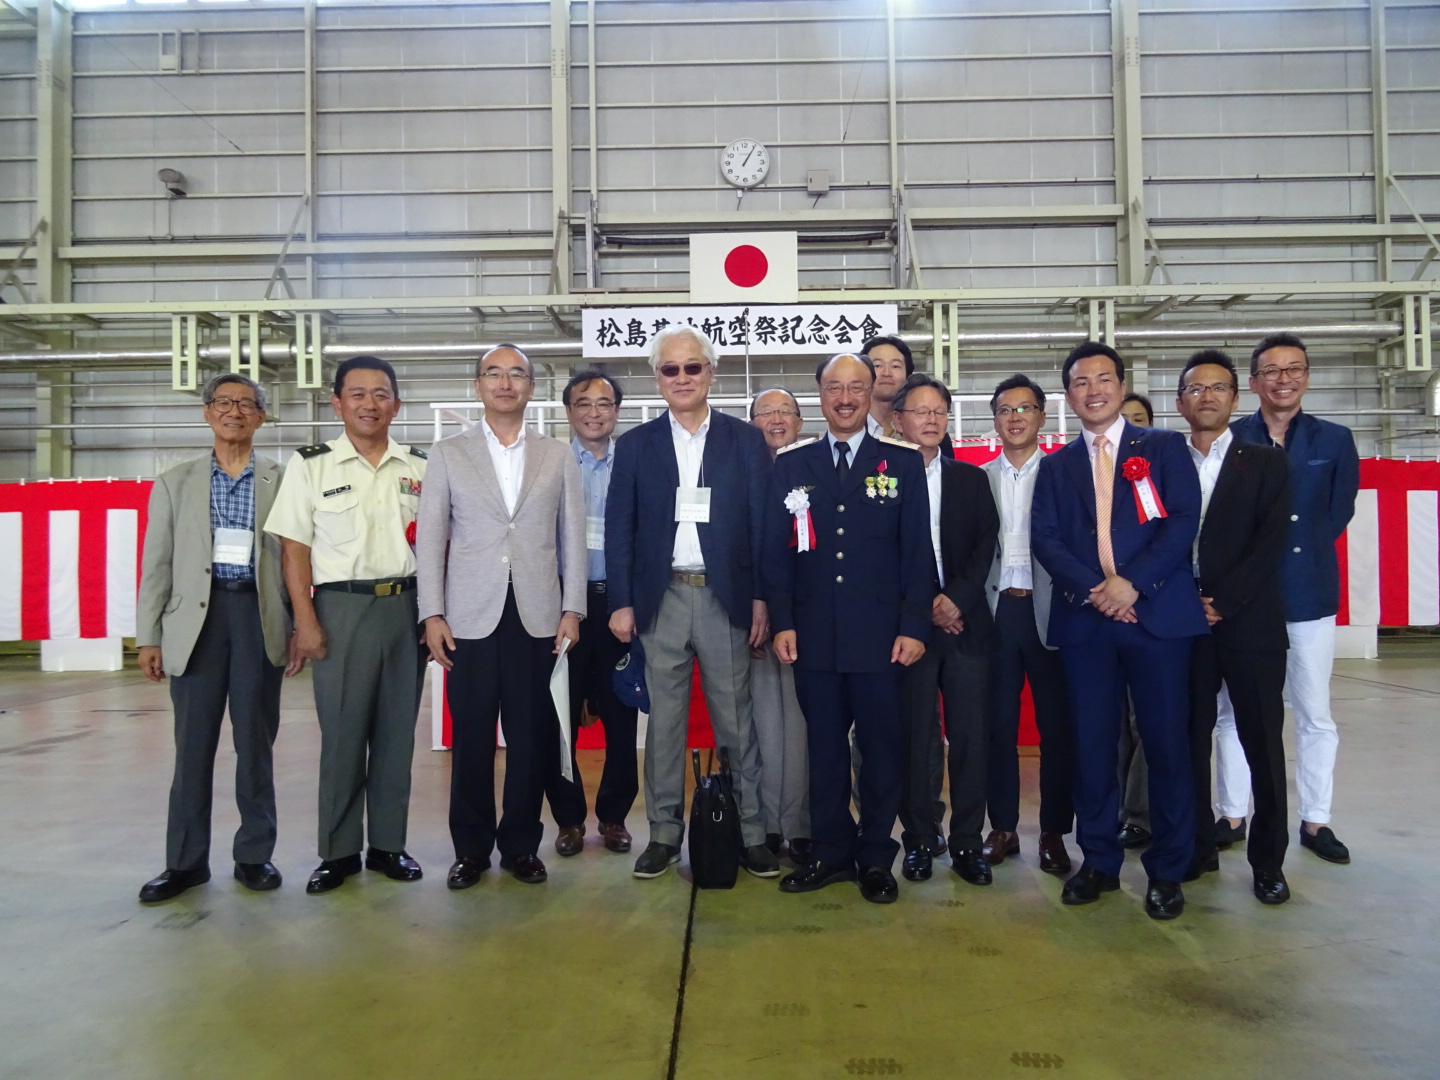 当会からは東京・栃木会員も含め１０名近くの参加者が招待され、７年ぶりの航空祭を時藤司令、参列した東北方面総監部山根幕僚副長、来賓の宇部参議院議員らと祝した。